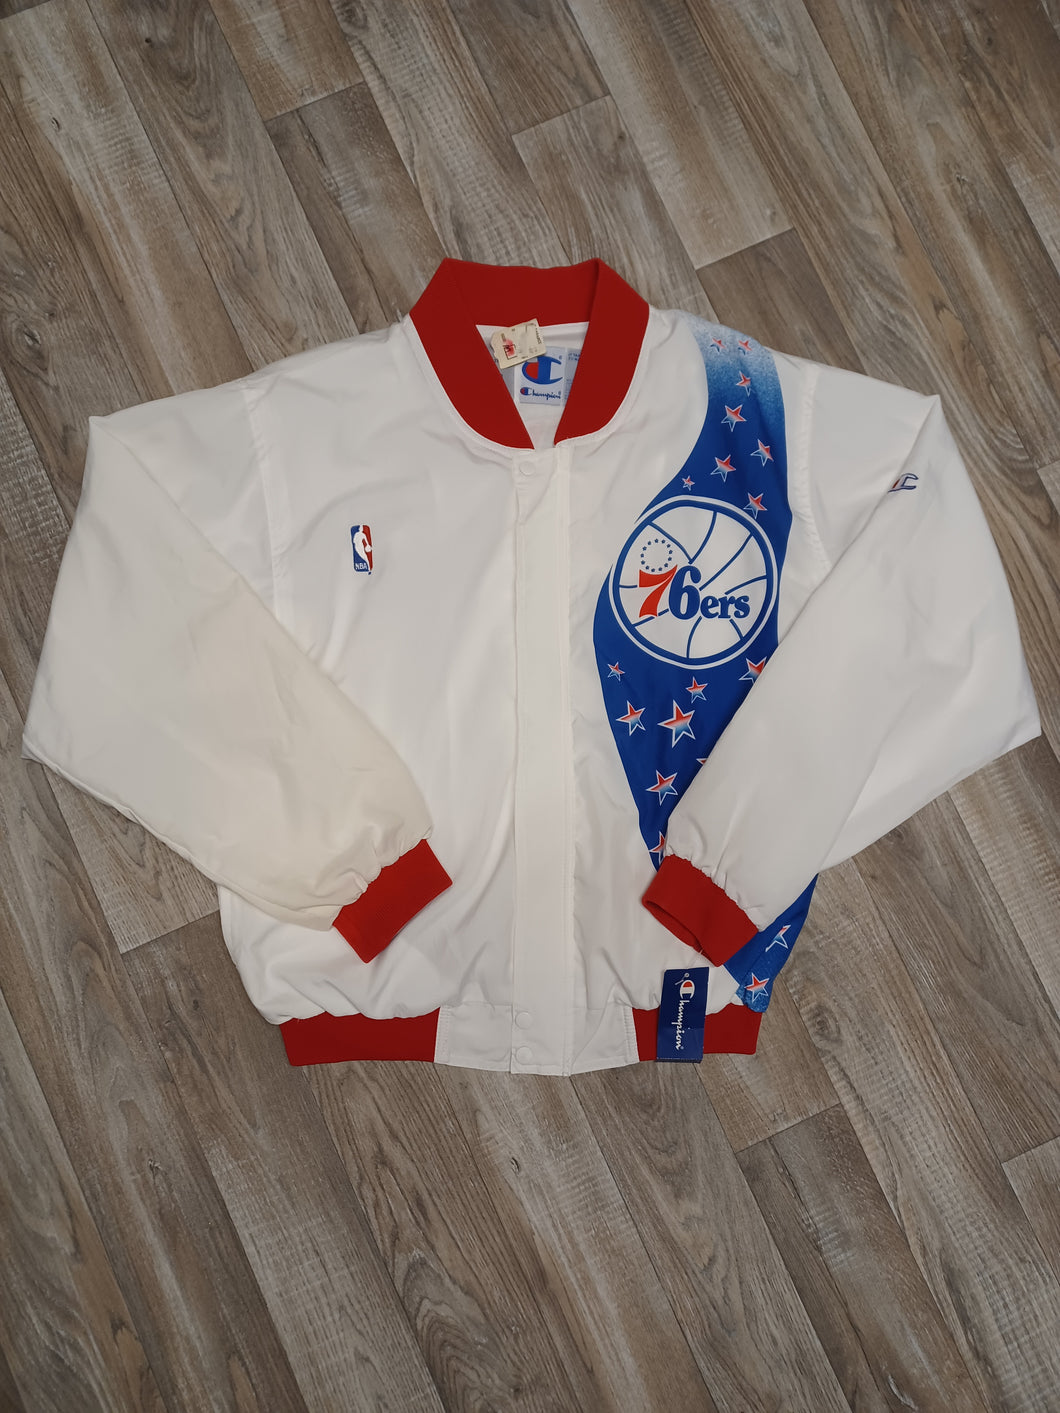 Philadelphia 76ers Warm Up Jacket Size Medium